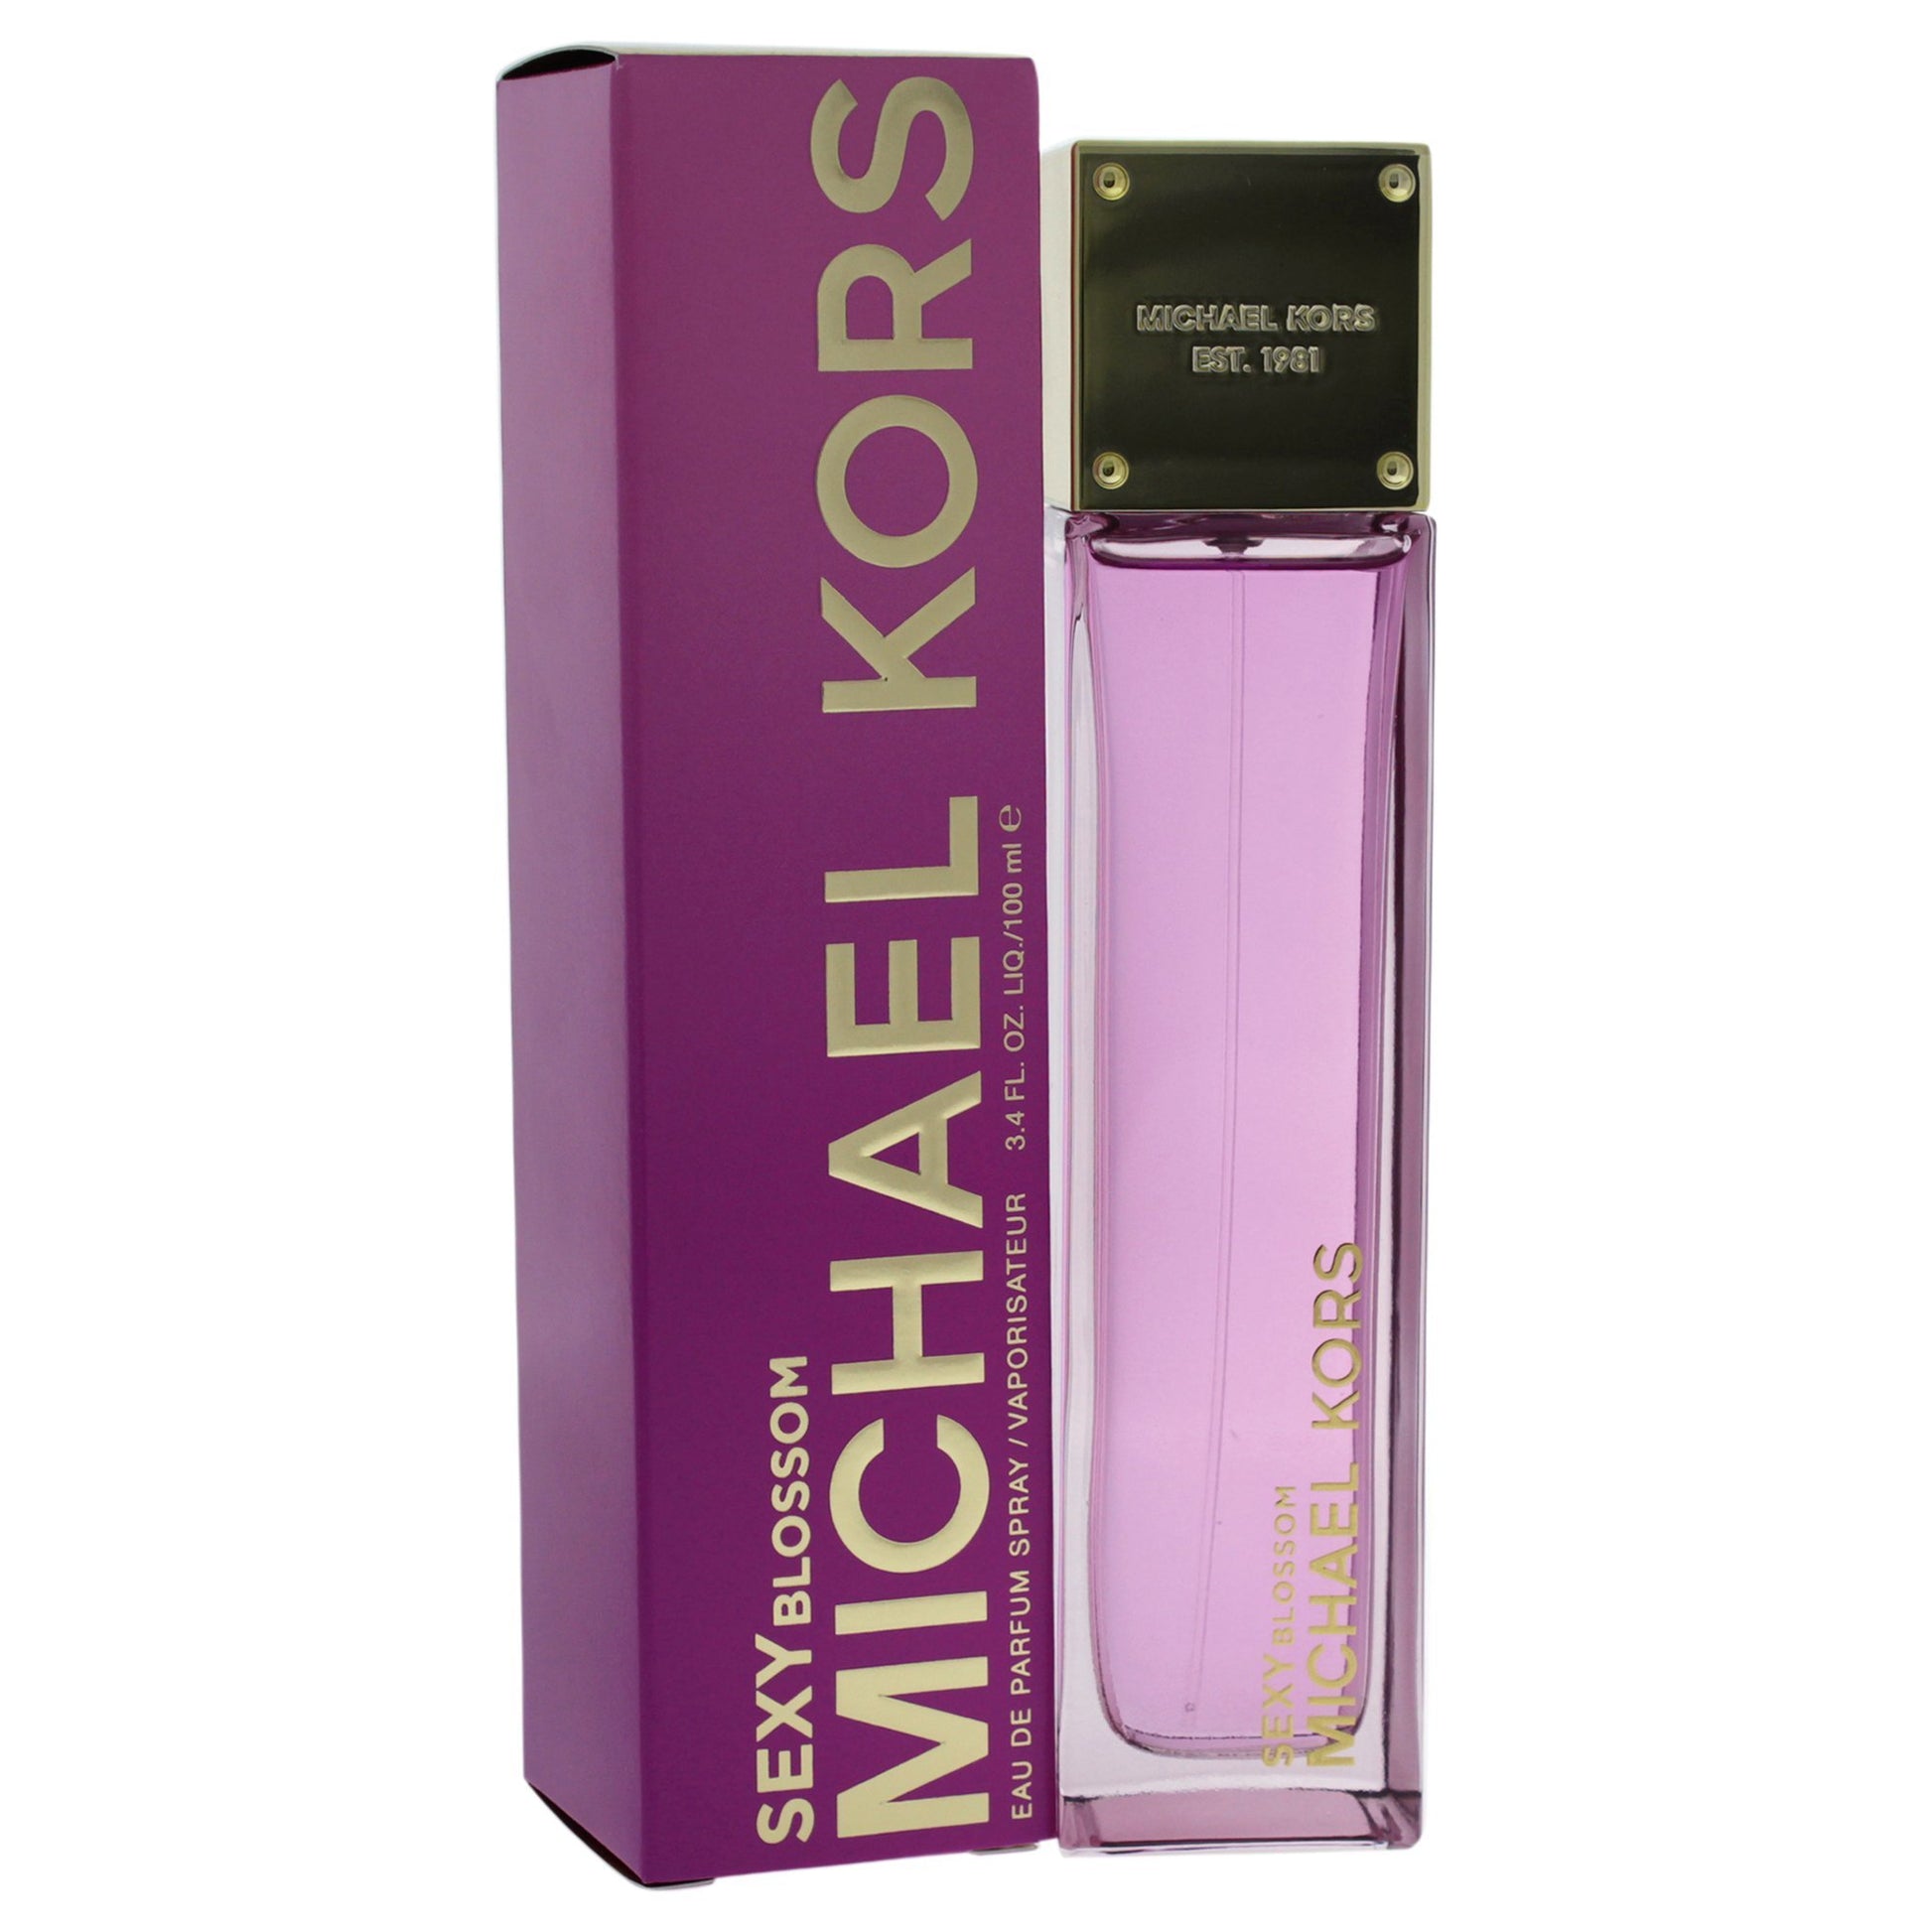 Michael Kors Sexy Blossom Perfume for Women 3.4 oz  Eau de Parfum Spray